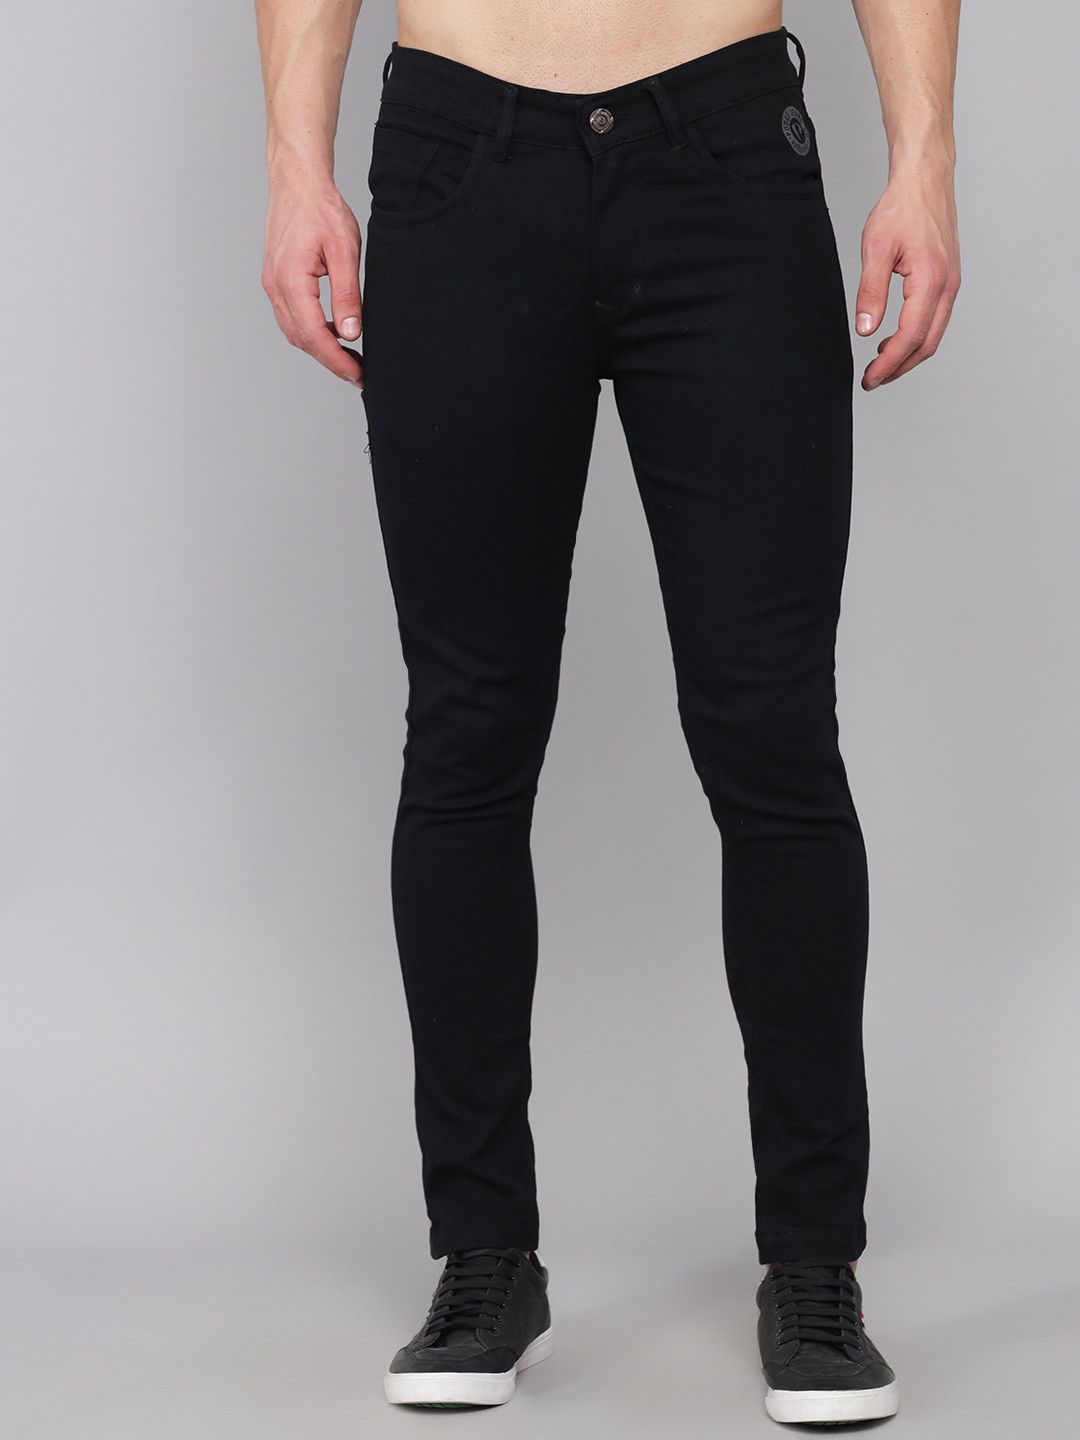 PODGE - Black Denim Slim Fit Men's Jeans ( Pack of 1 )